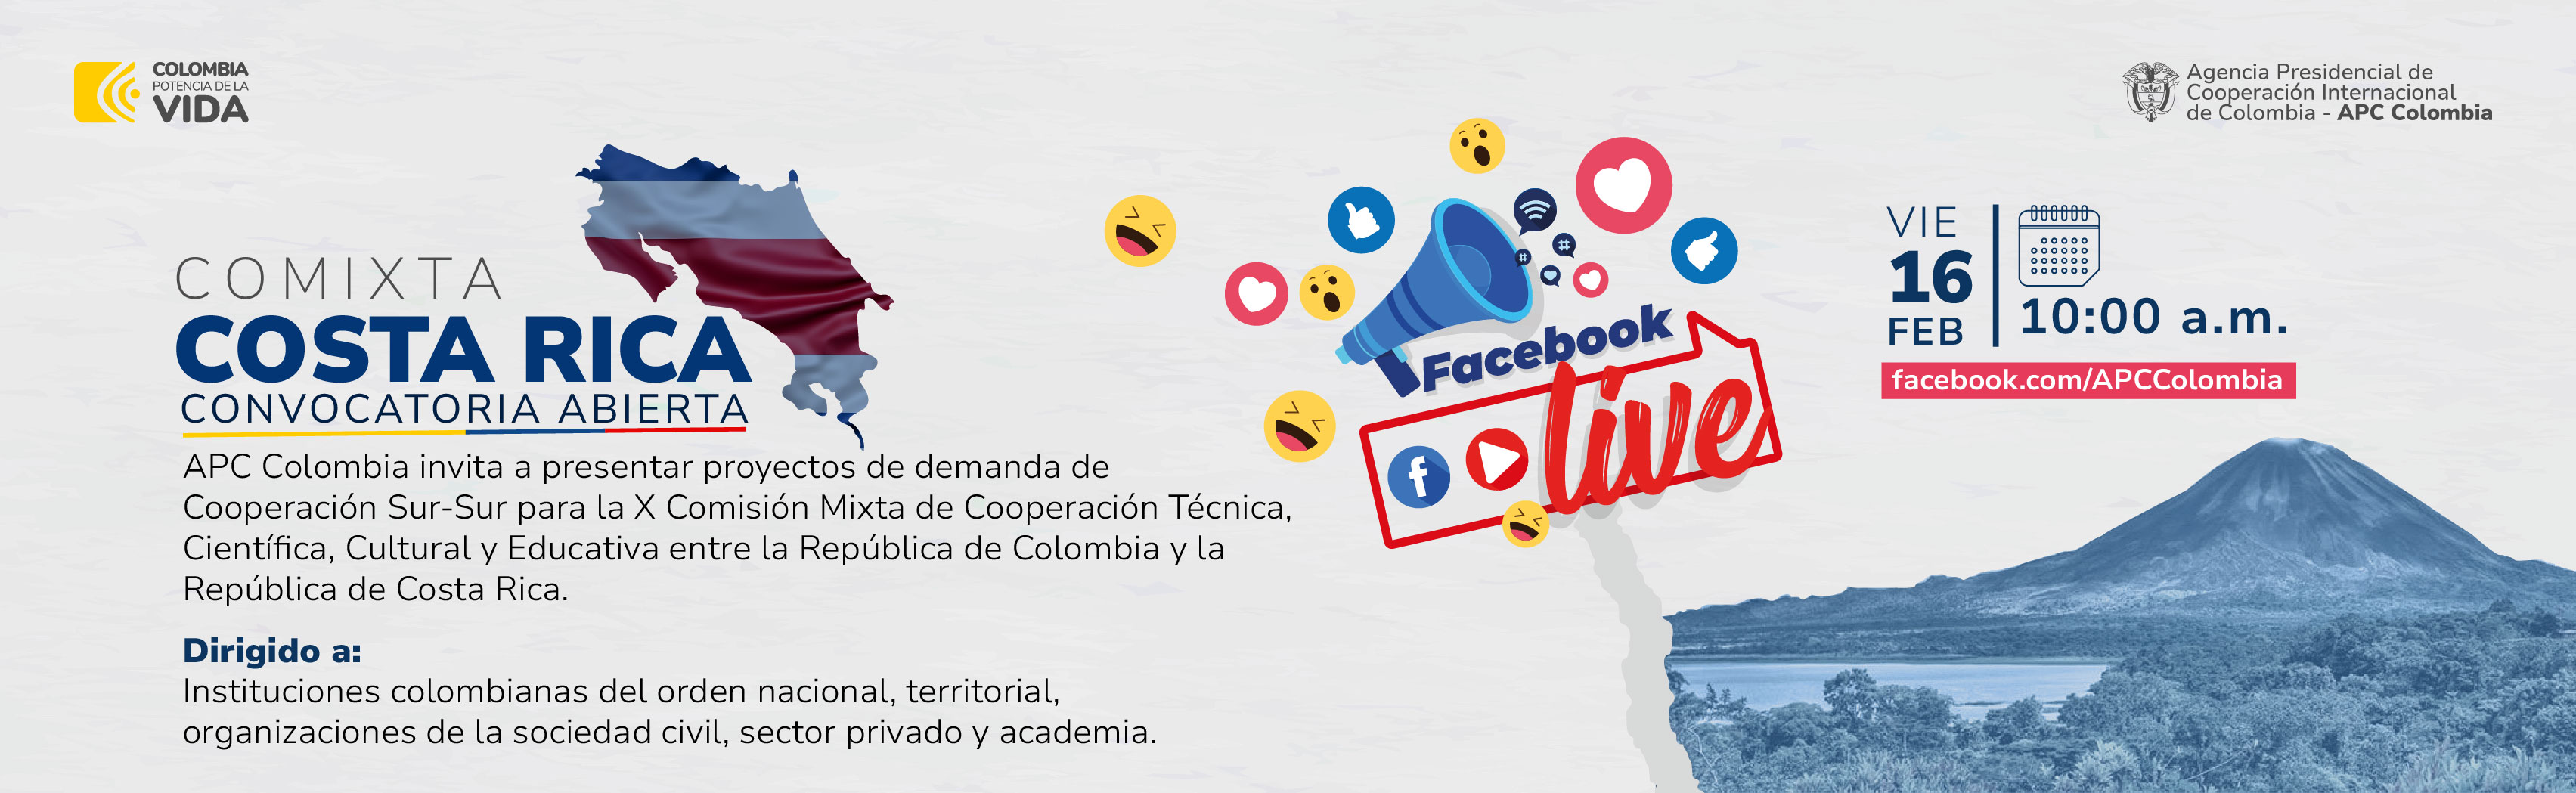 Invitación Facebook Live Comixta entre Colombia y Costa Rica el viernes 16 de febrero a las 10 am